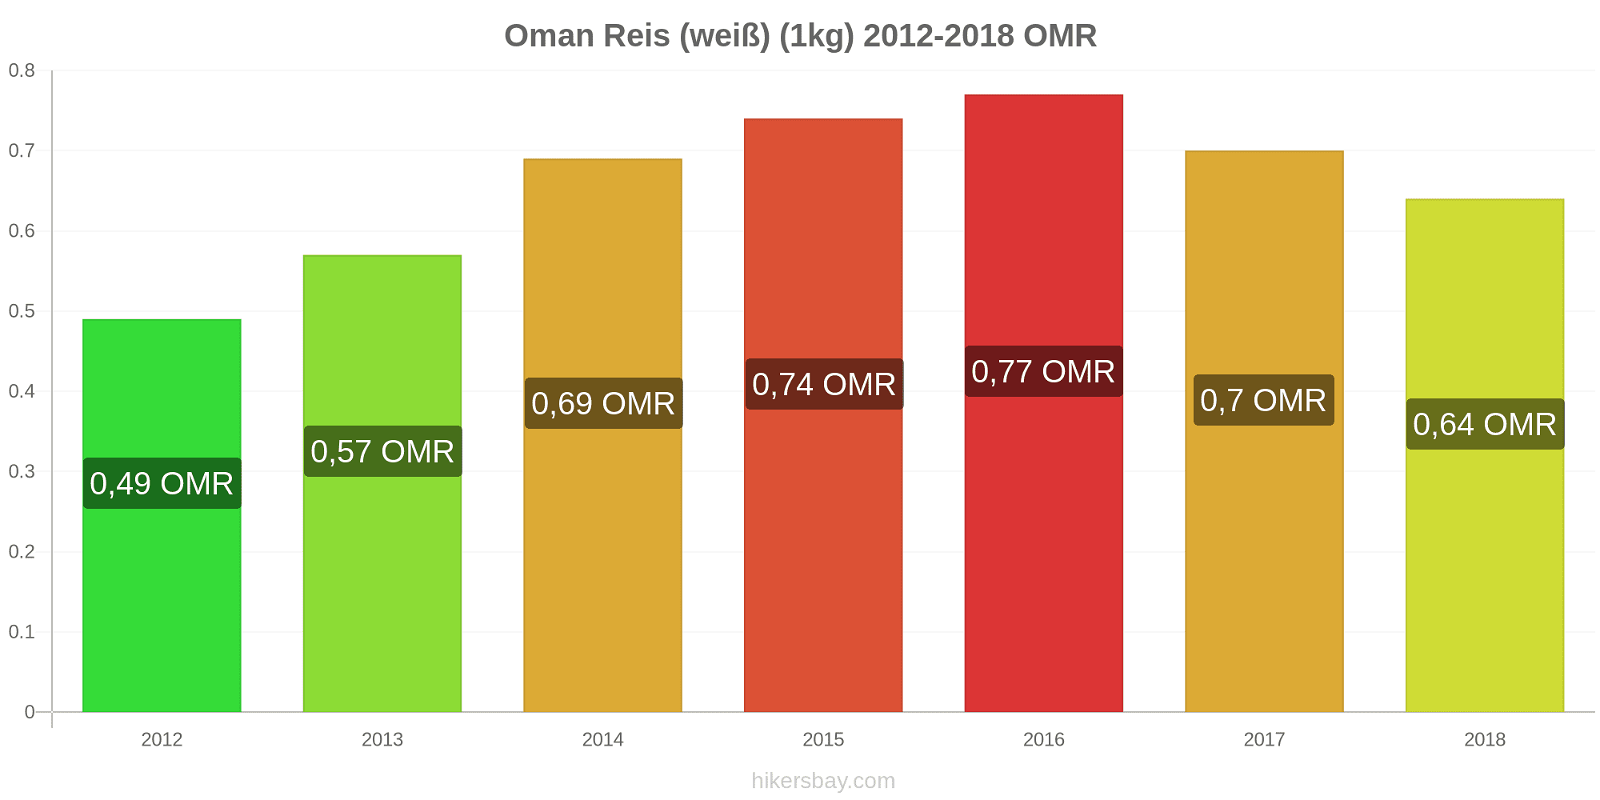 Oman Preisänderungen Reis (weiß) (1kg) hikersbay.com